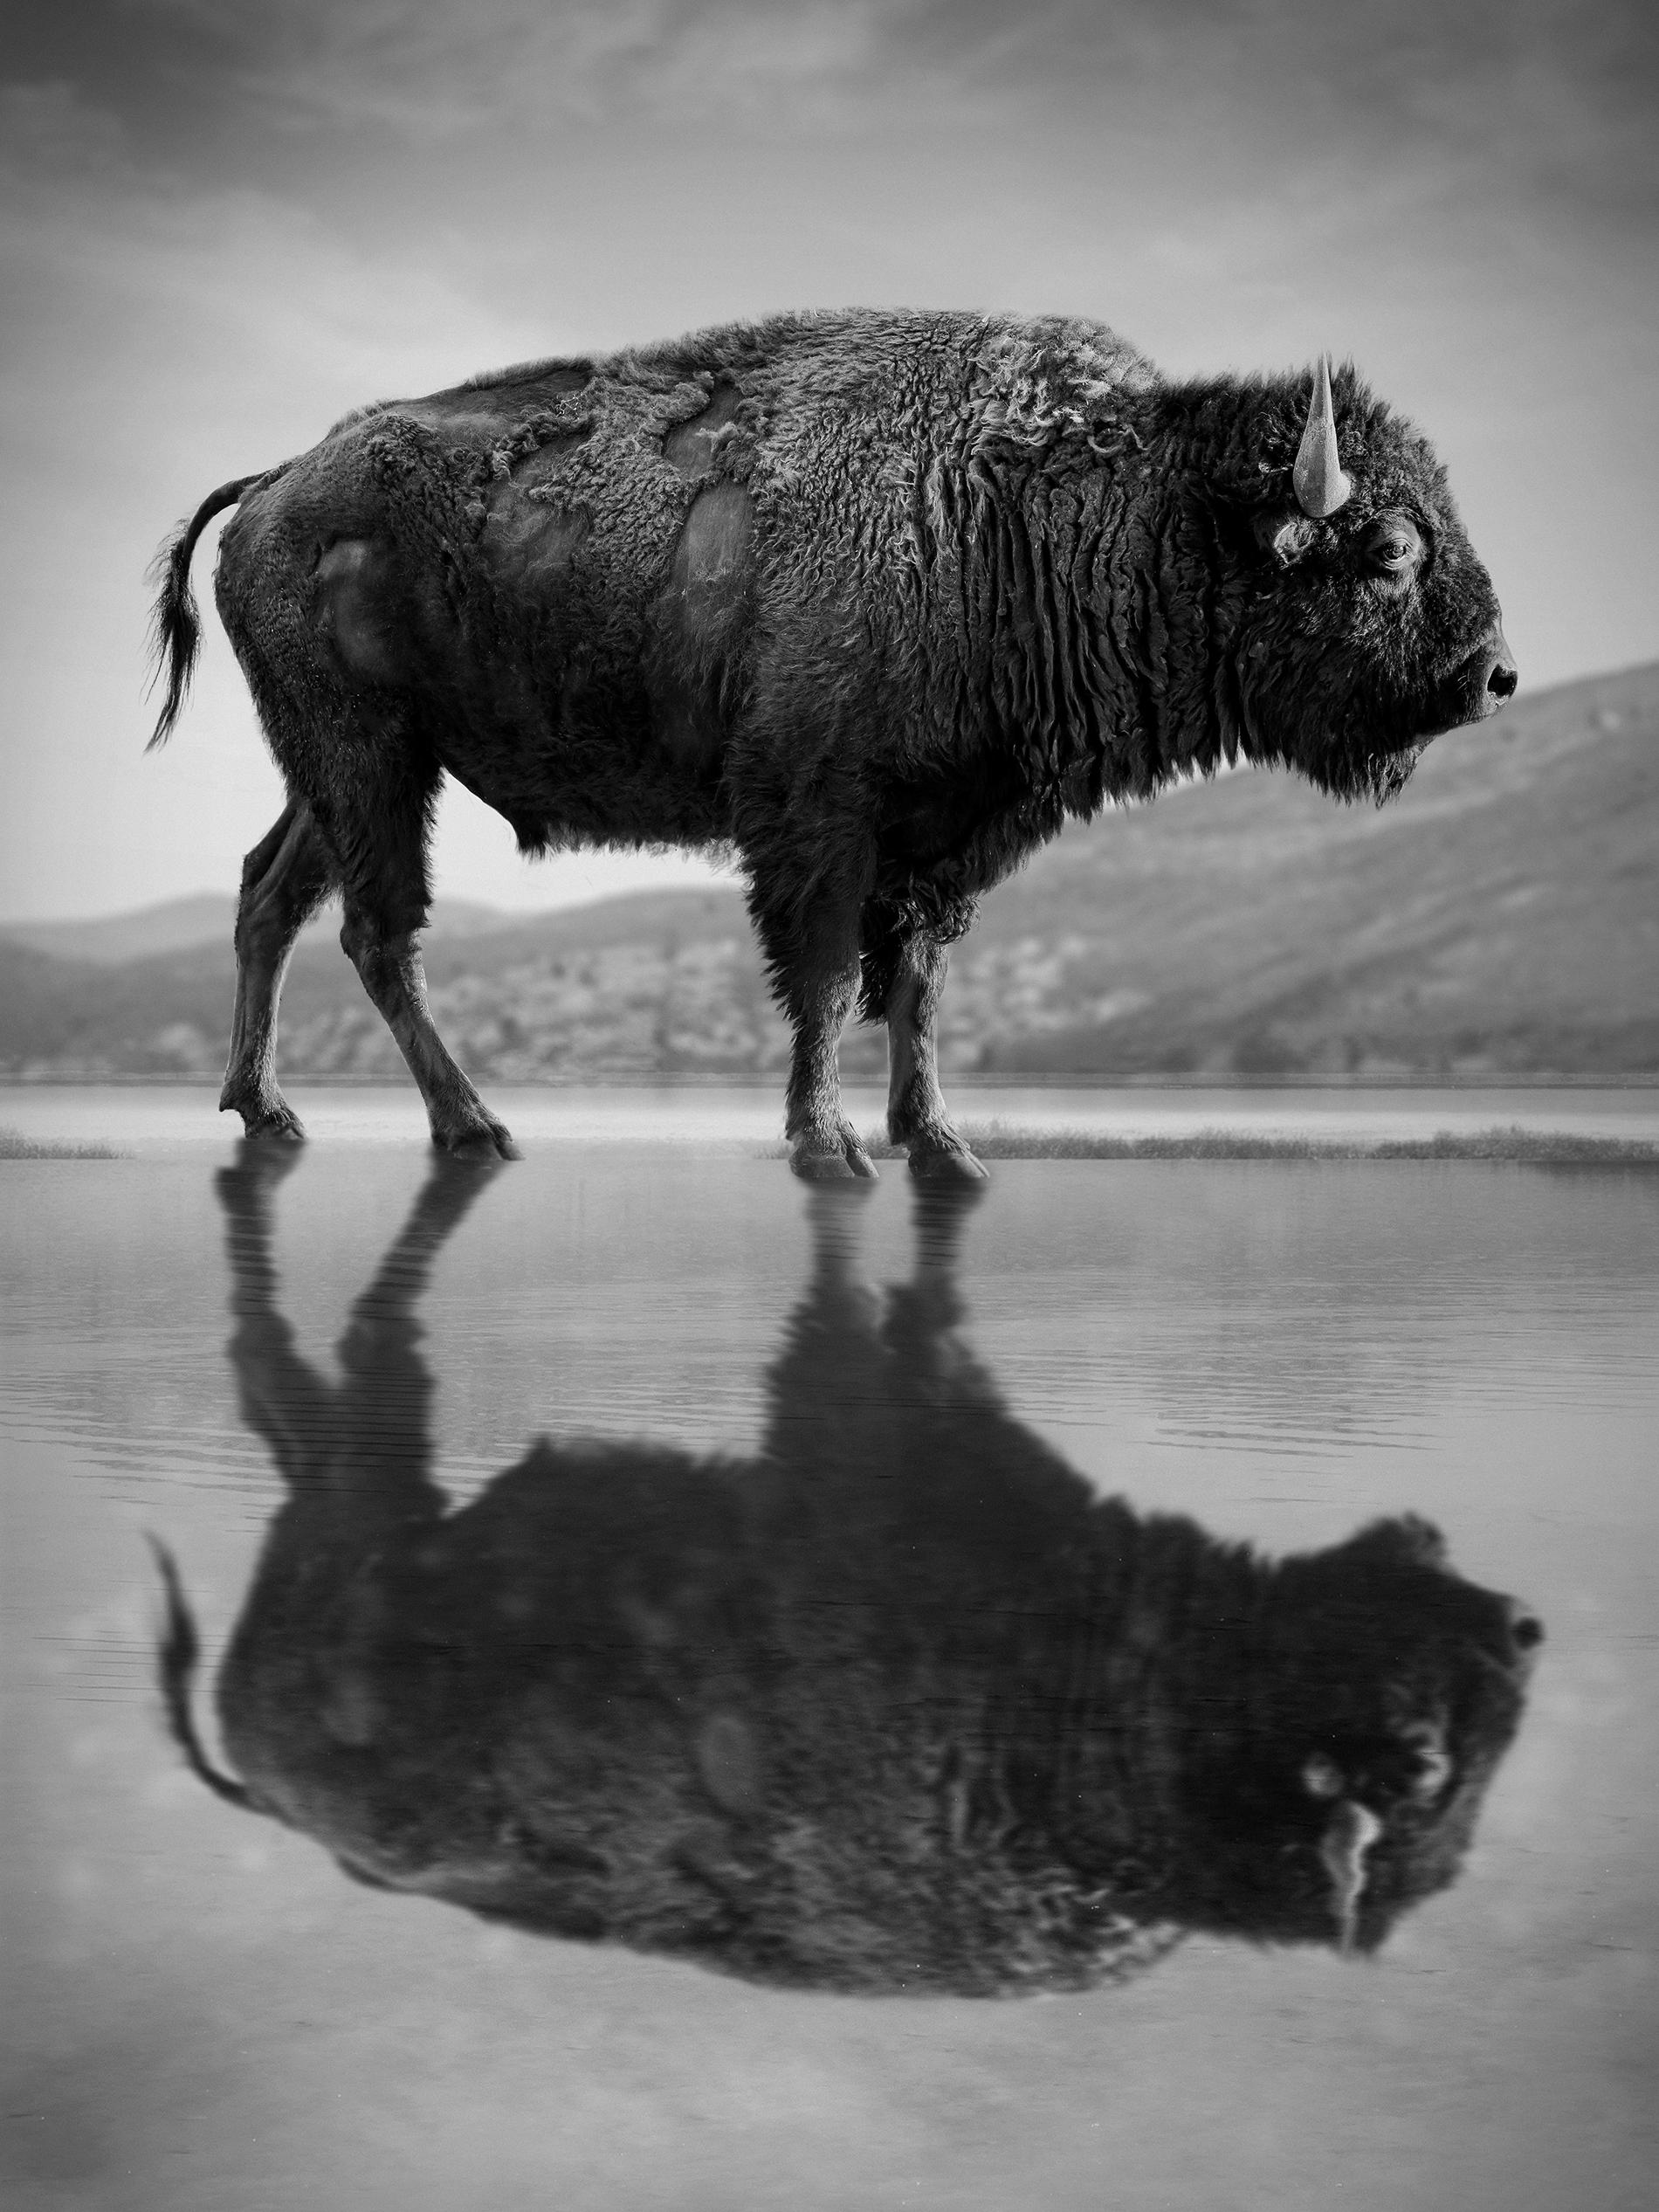 Shane Russeck Black and White Photograph – „Old World“ 48x36 Schwarz-Weiß-Fotografie Bison Buffalo, signiert AP-Fotografie